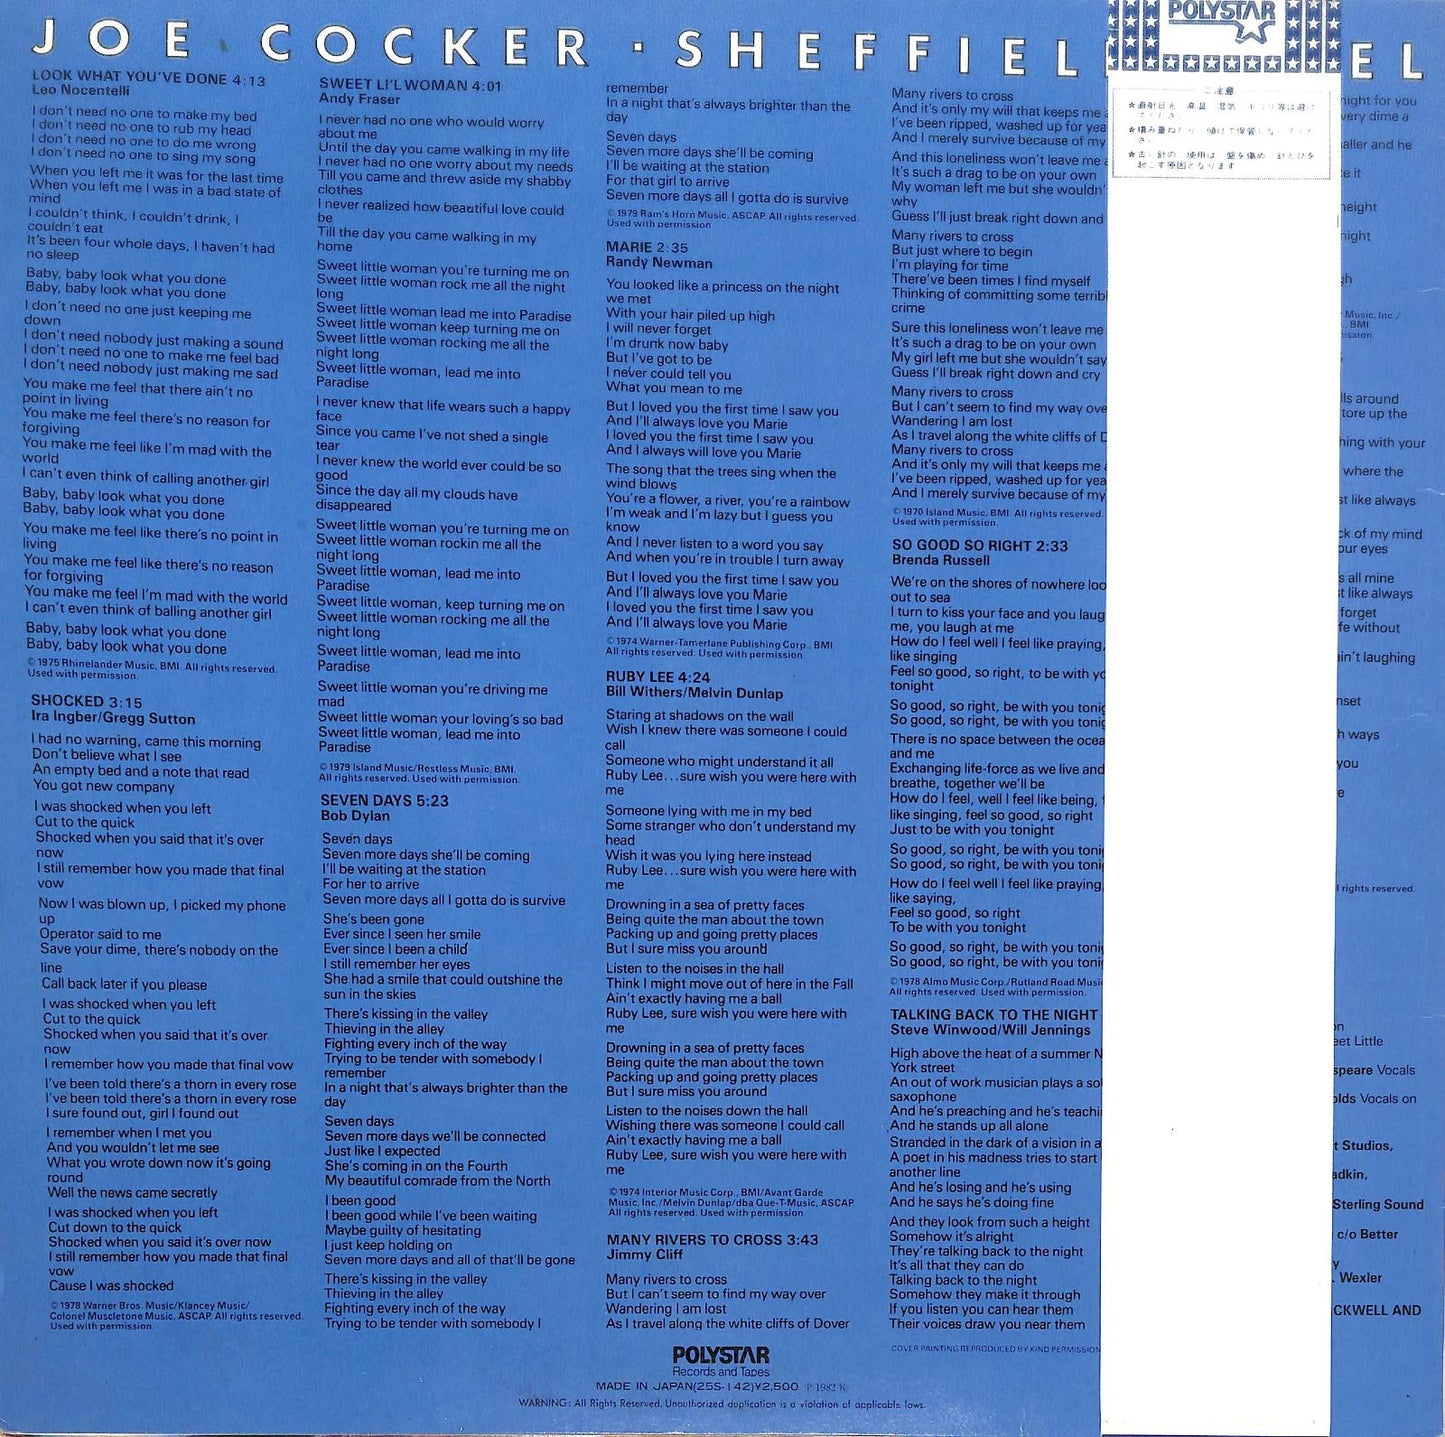 JOE COCKER - Sheffield Steel